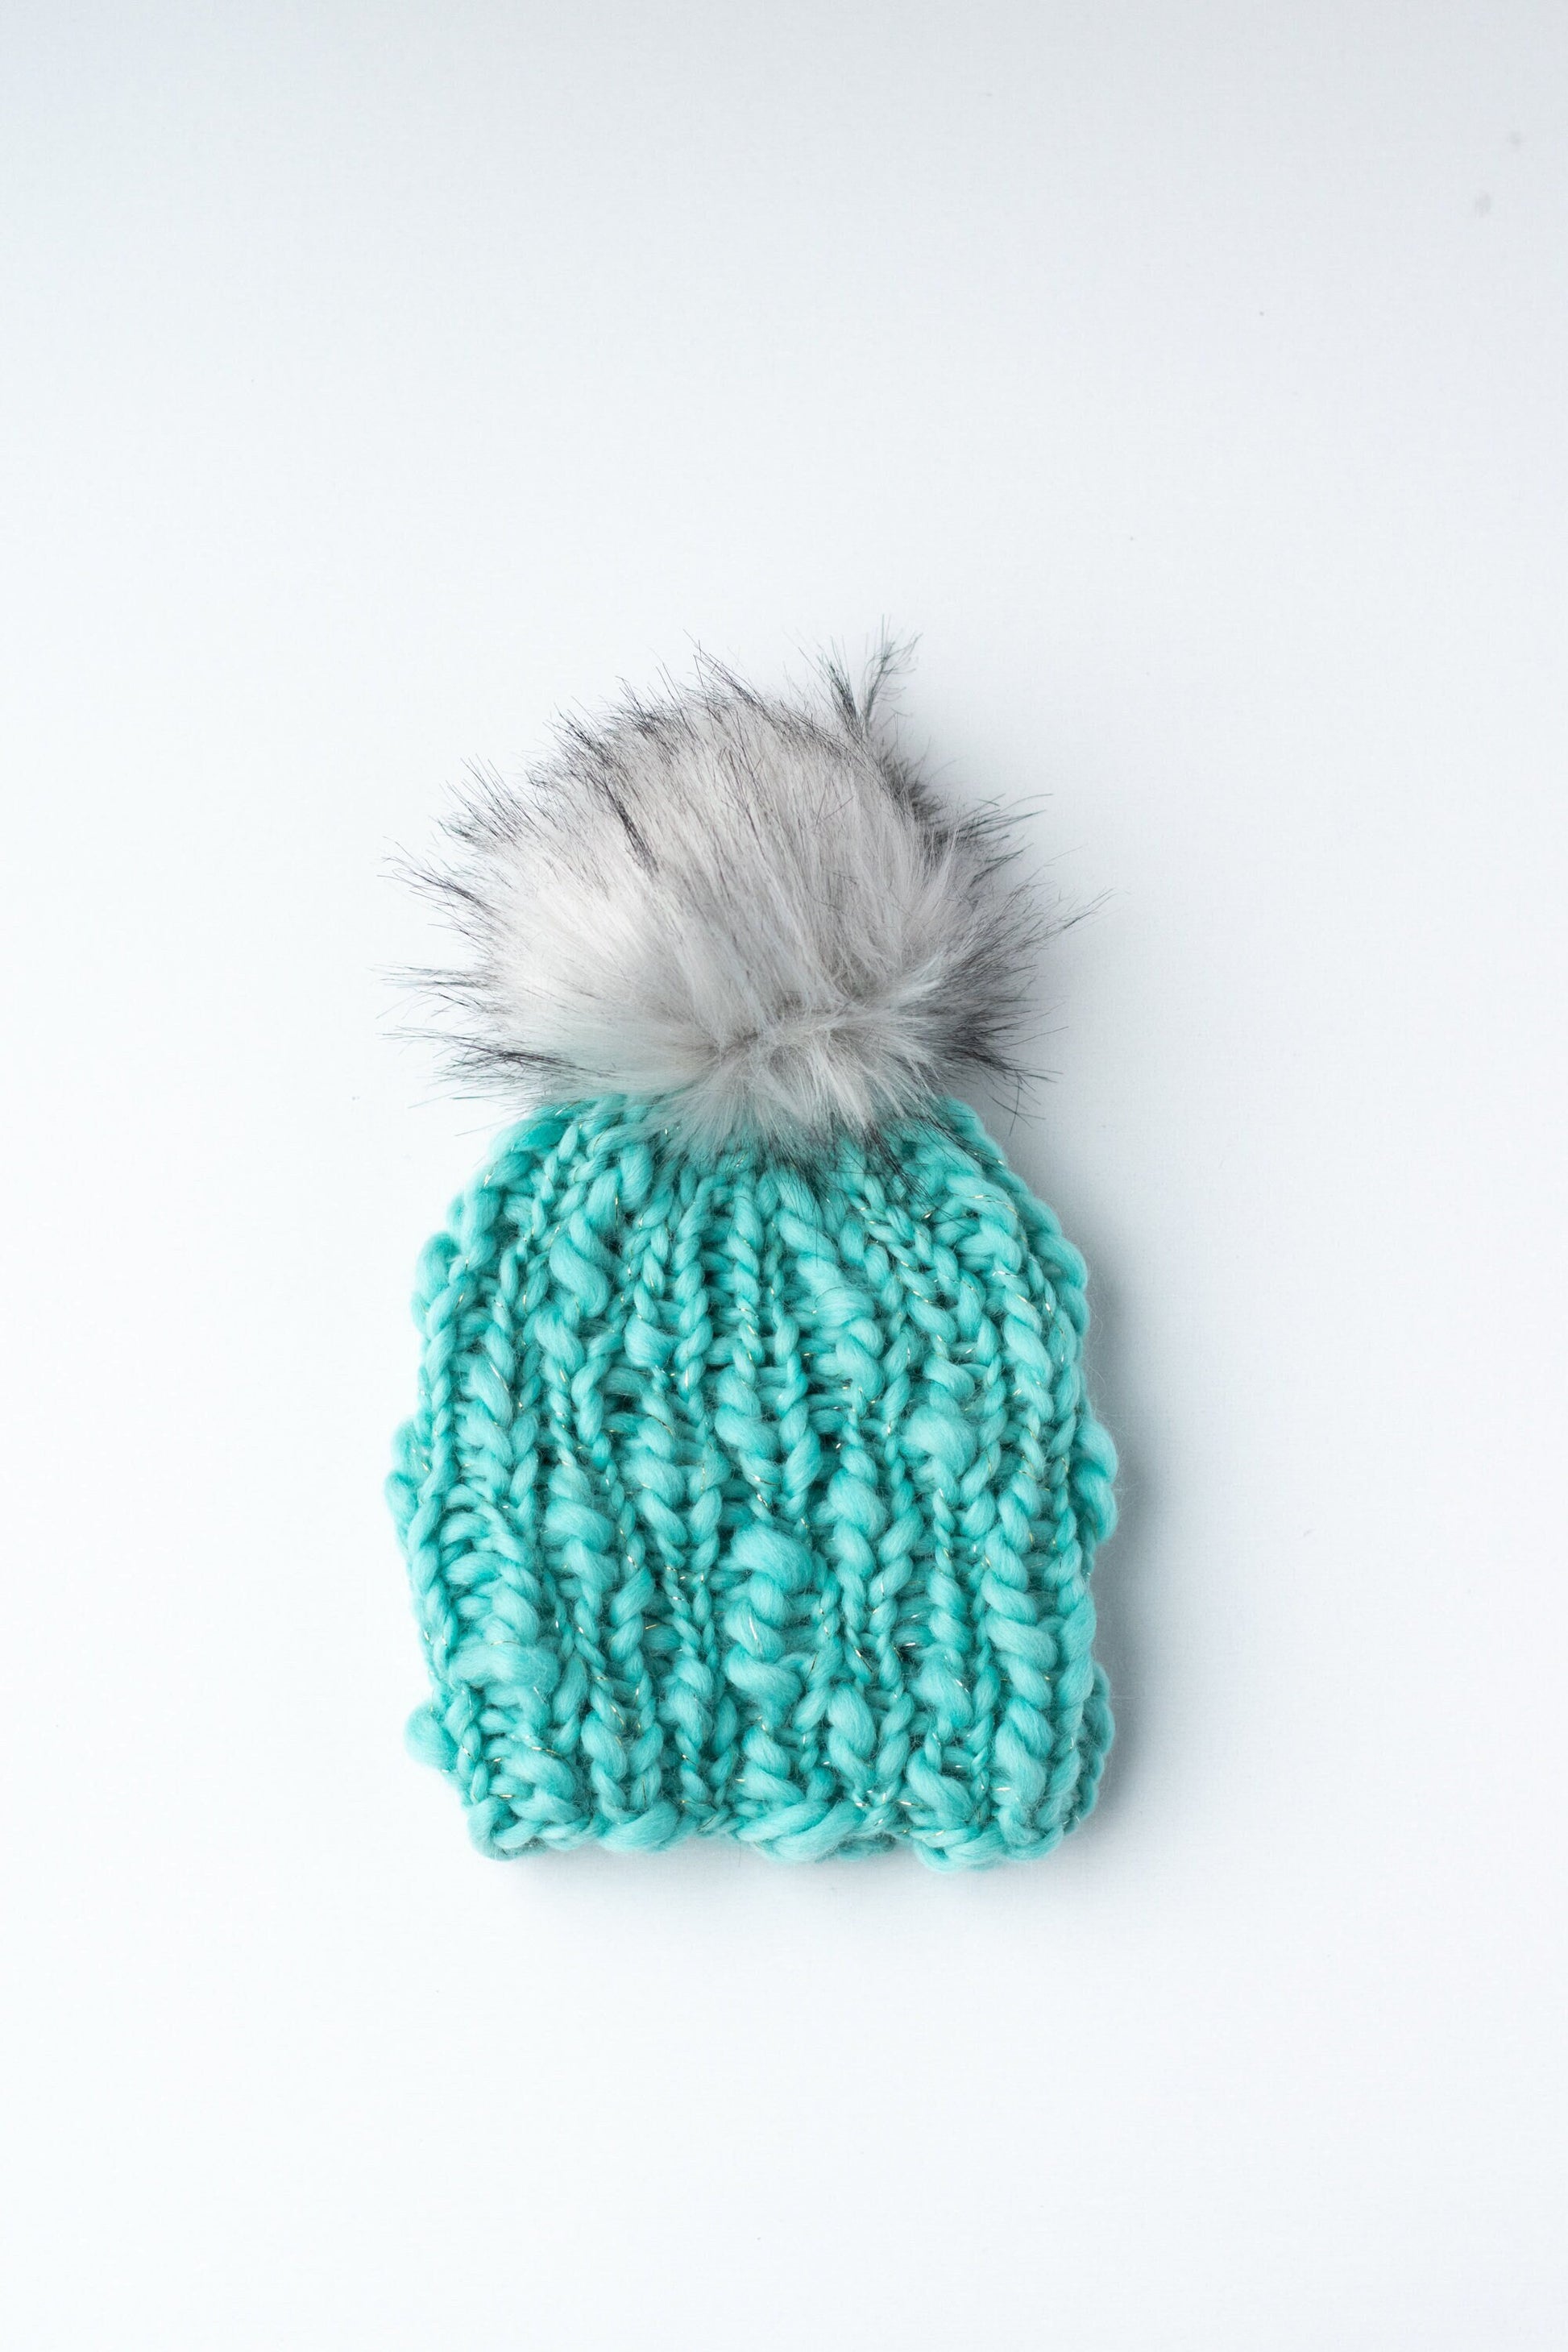 Toddler Teal Hand Knit Handspun Wool Hat | Toddler Chunky Knit Hat | Turquoise Toddler Winter Knit Hat | Boho Chic Toddler Winter Hat